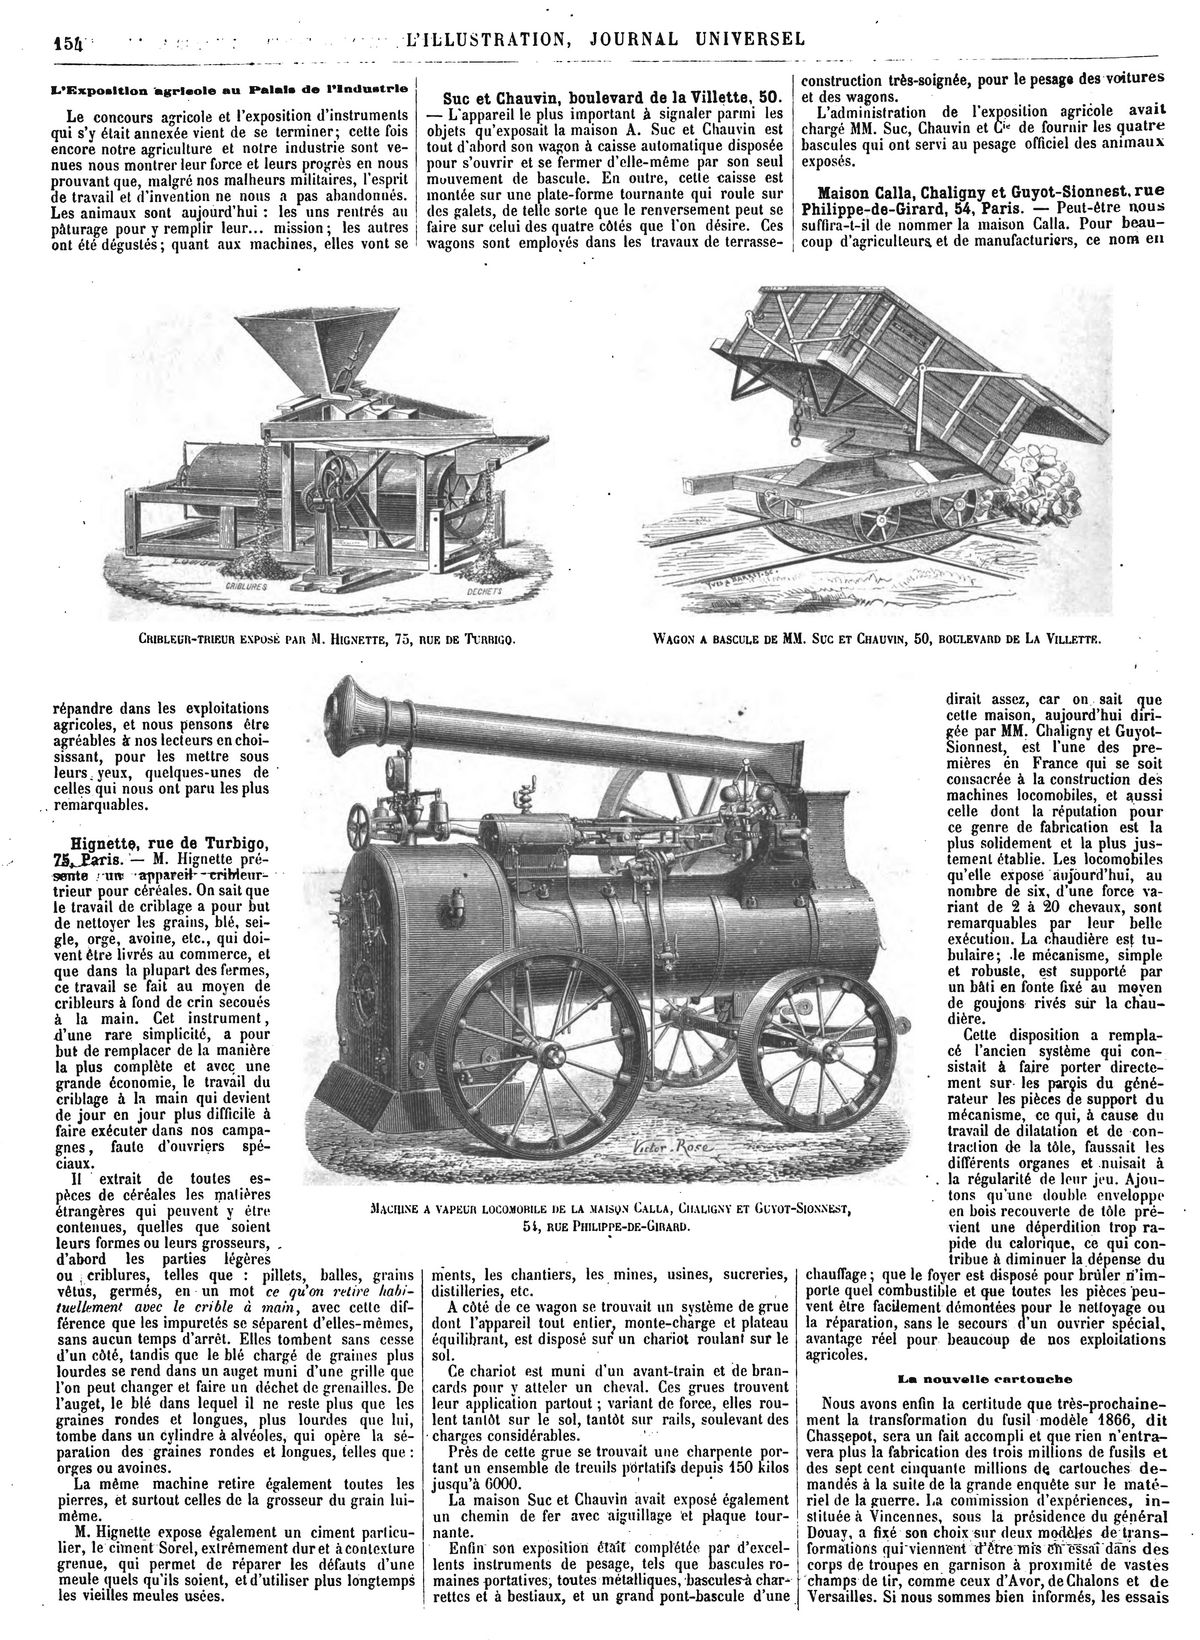 Cribleur-trieur exposé par M. Hignette. (gravure 1874) — Wagon à bascule de MM. Suc et Chauvin. (gravure 1874) — Machine à vapeur locomobile de MM. Calla, Chalignyet Guyot-Sionnest. (gravure 1874)